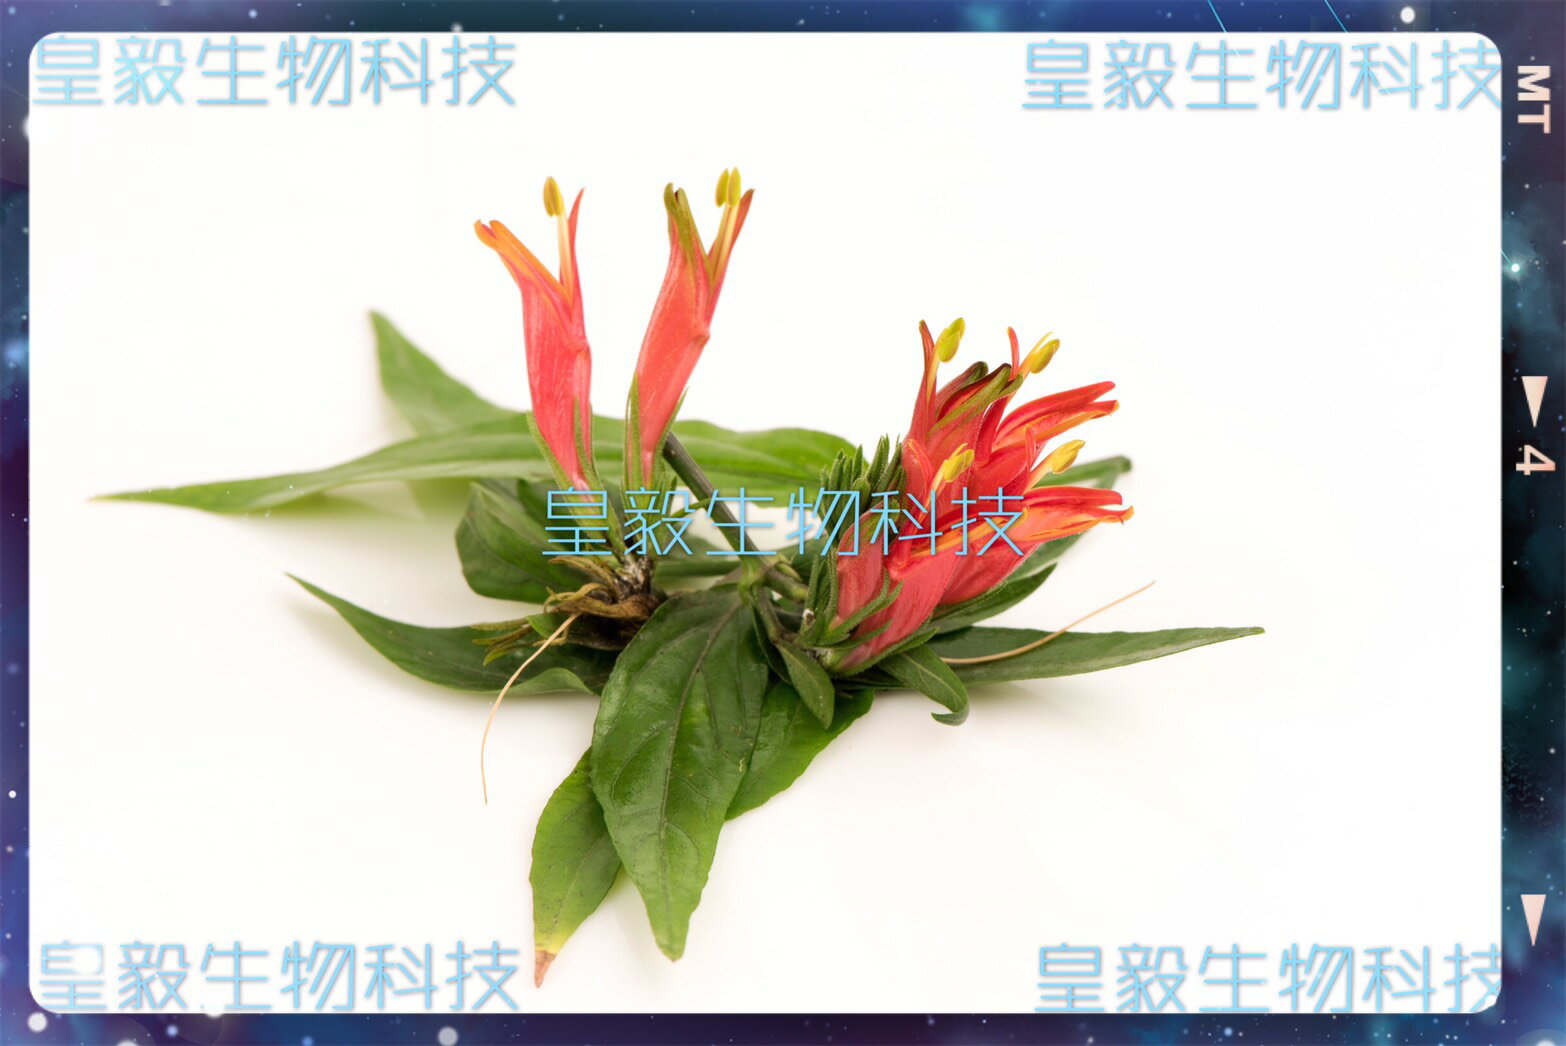 憂遁草純葉子(沙巴蛇草純葉子)台灣種植